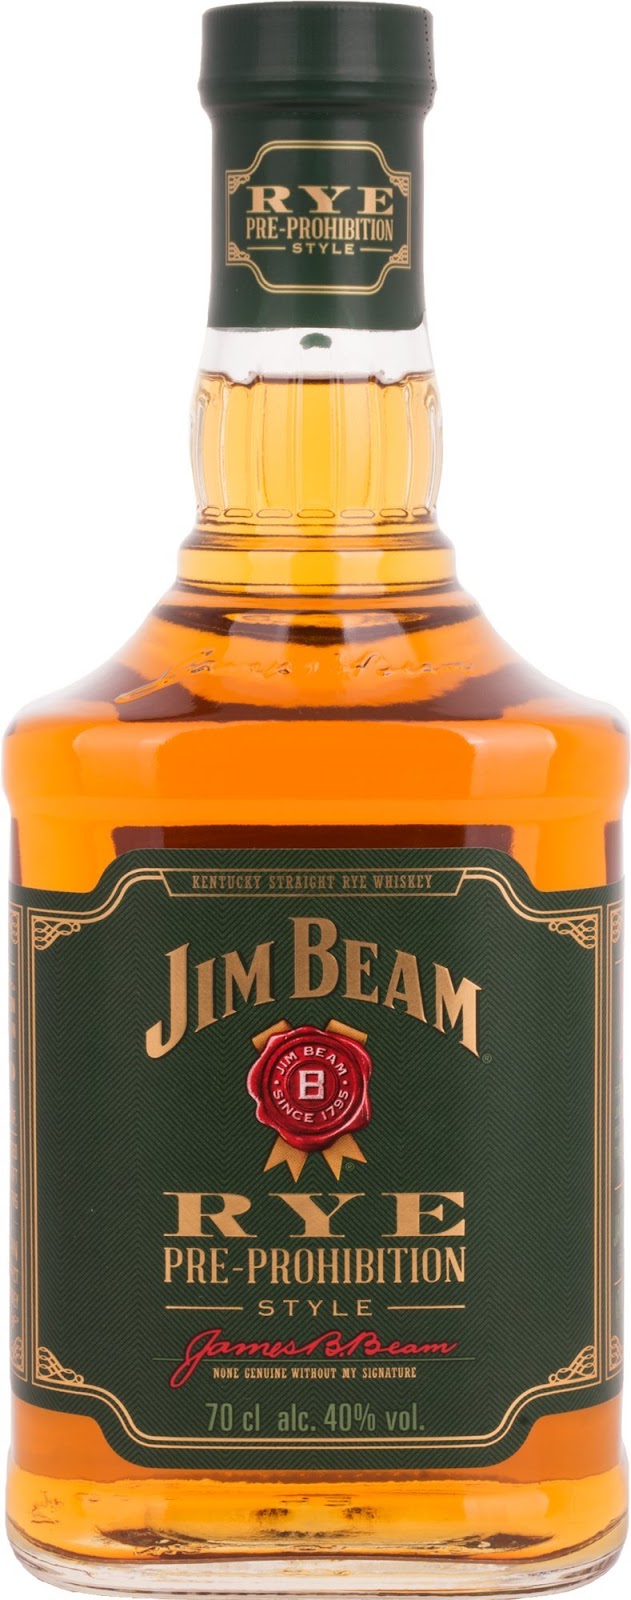 Whisky Bourbon Americano Jim Beam Rye, 700ml